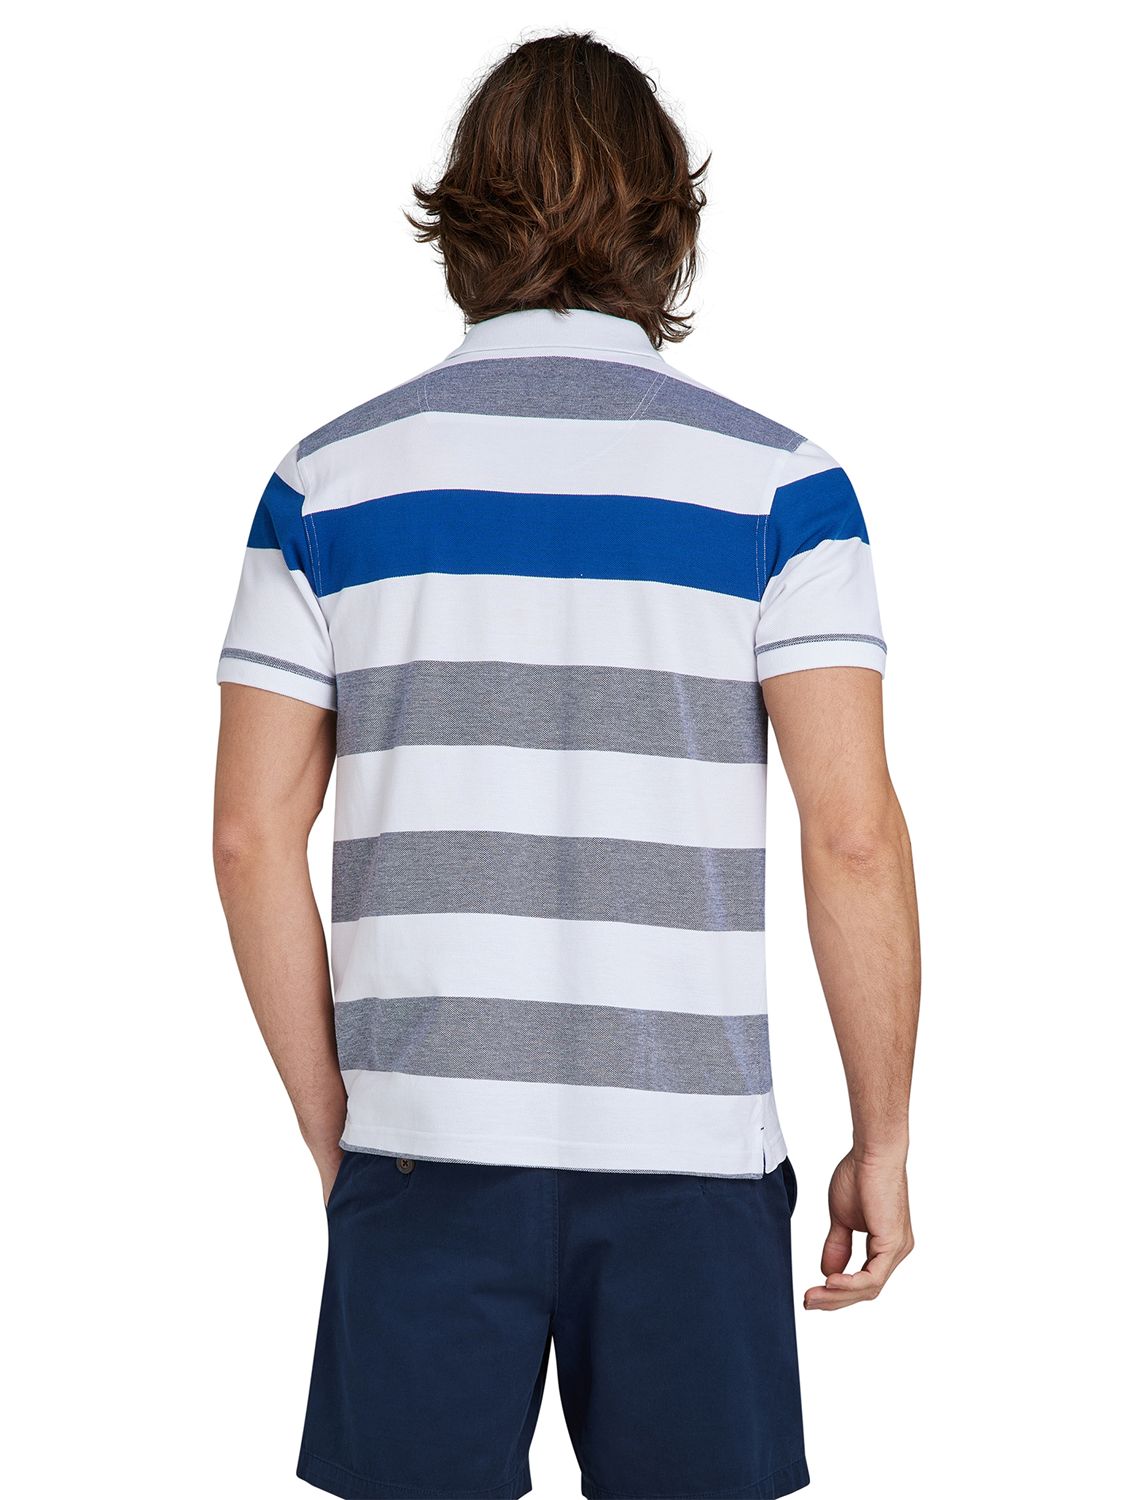 Raging Bull Birdseye Stripe Polo Shirt, Cobalt Blue/Multi, M